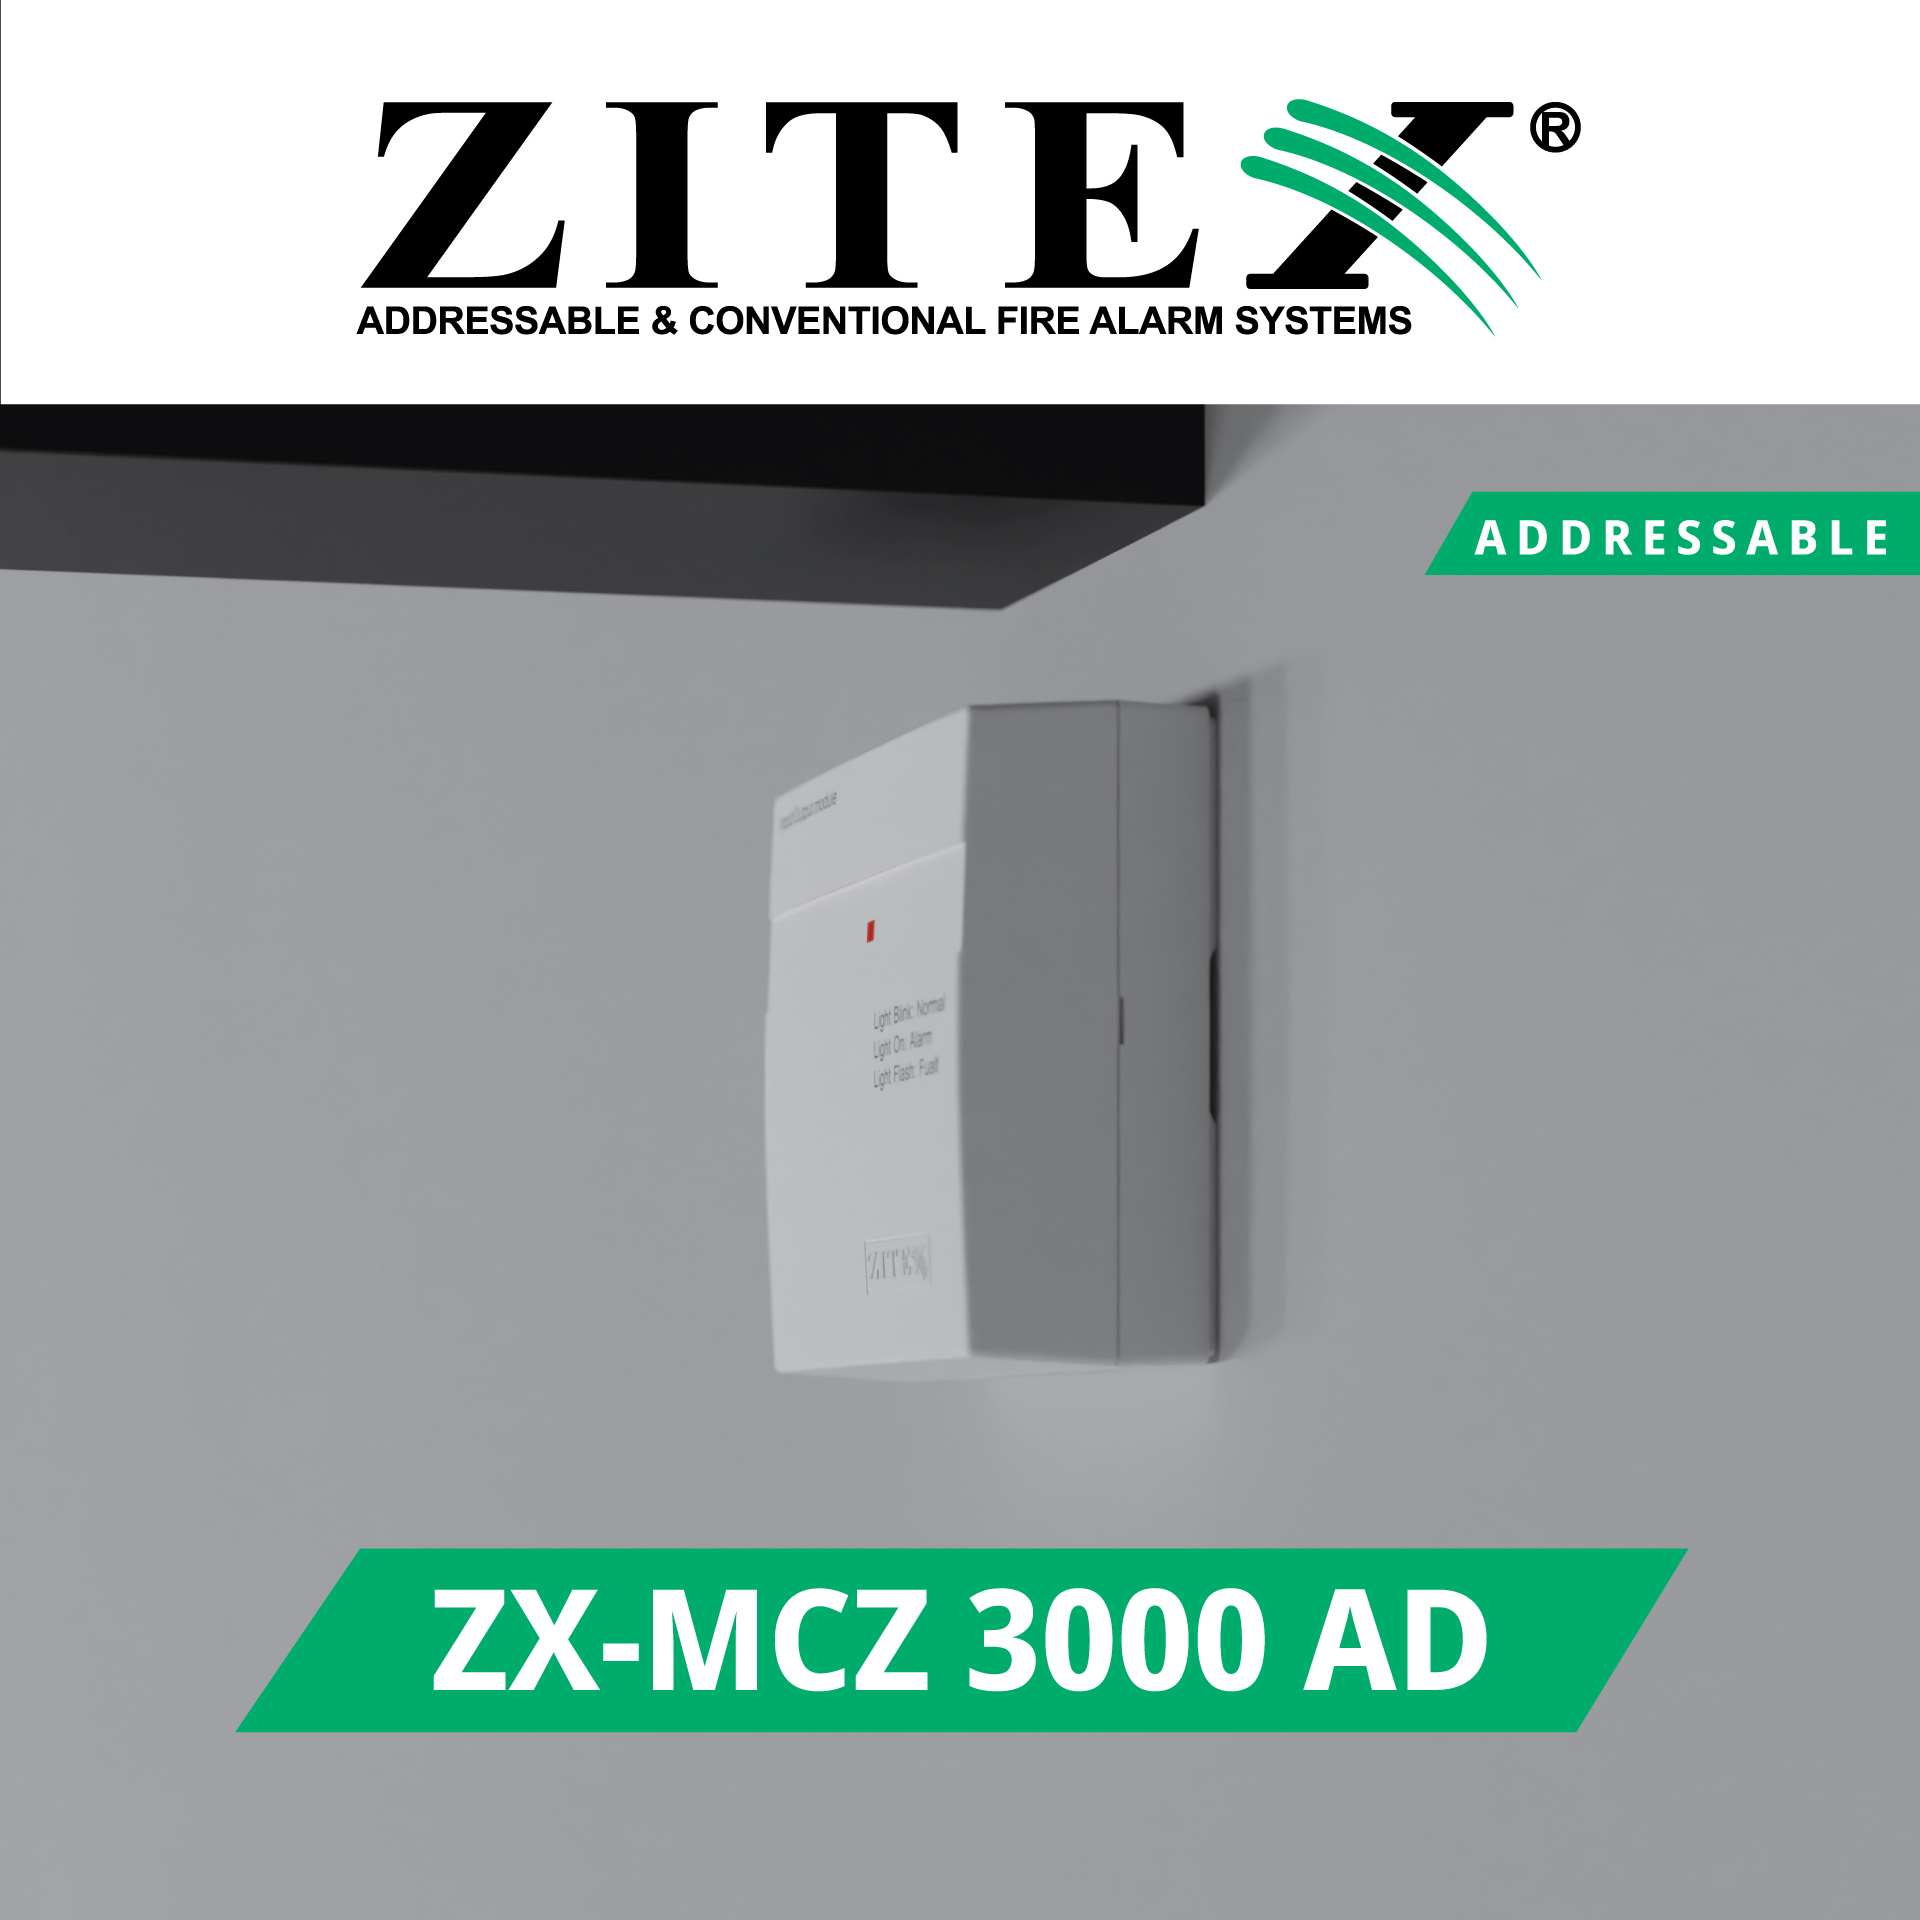 پست اینستاگرام ماژول زون کانونشنال آدرس پذیر ZX-MCZ 3000 AD​